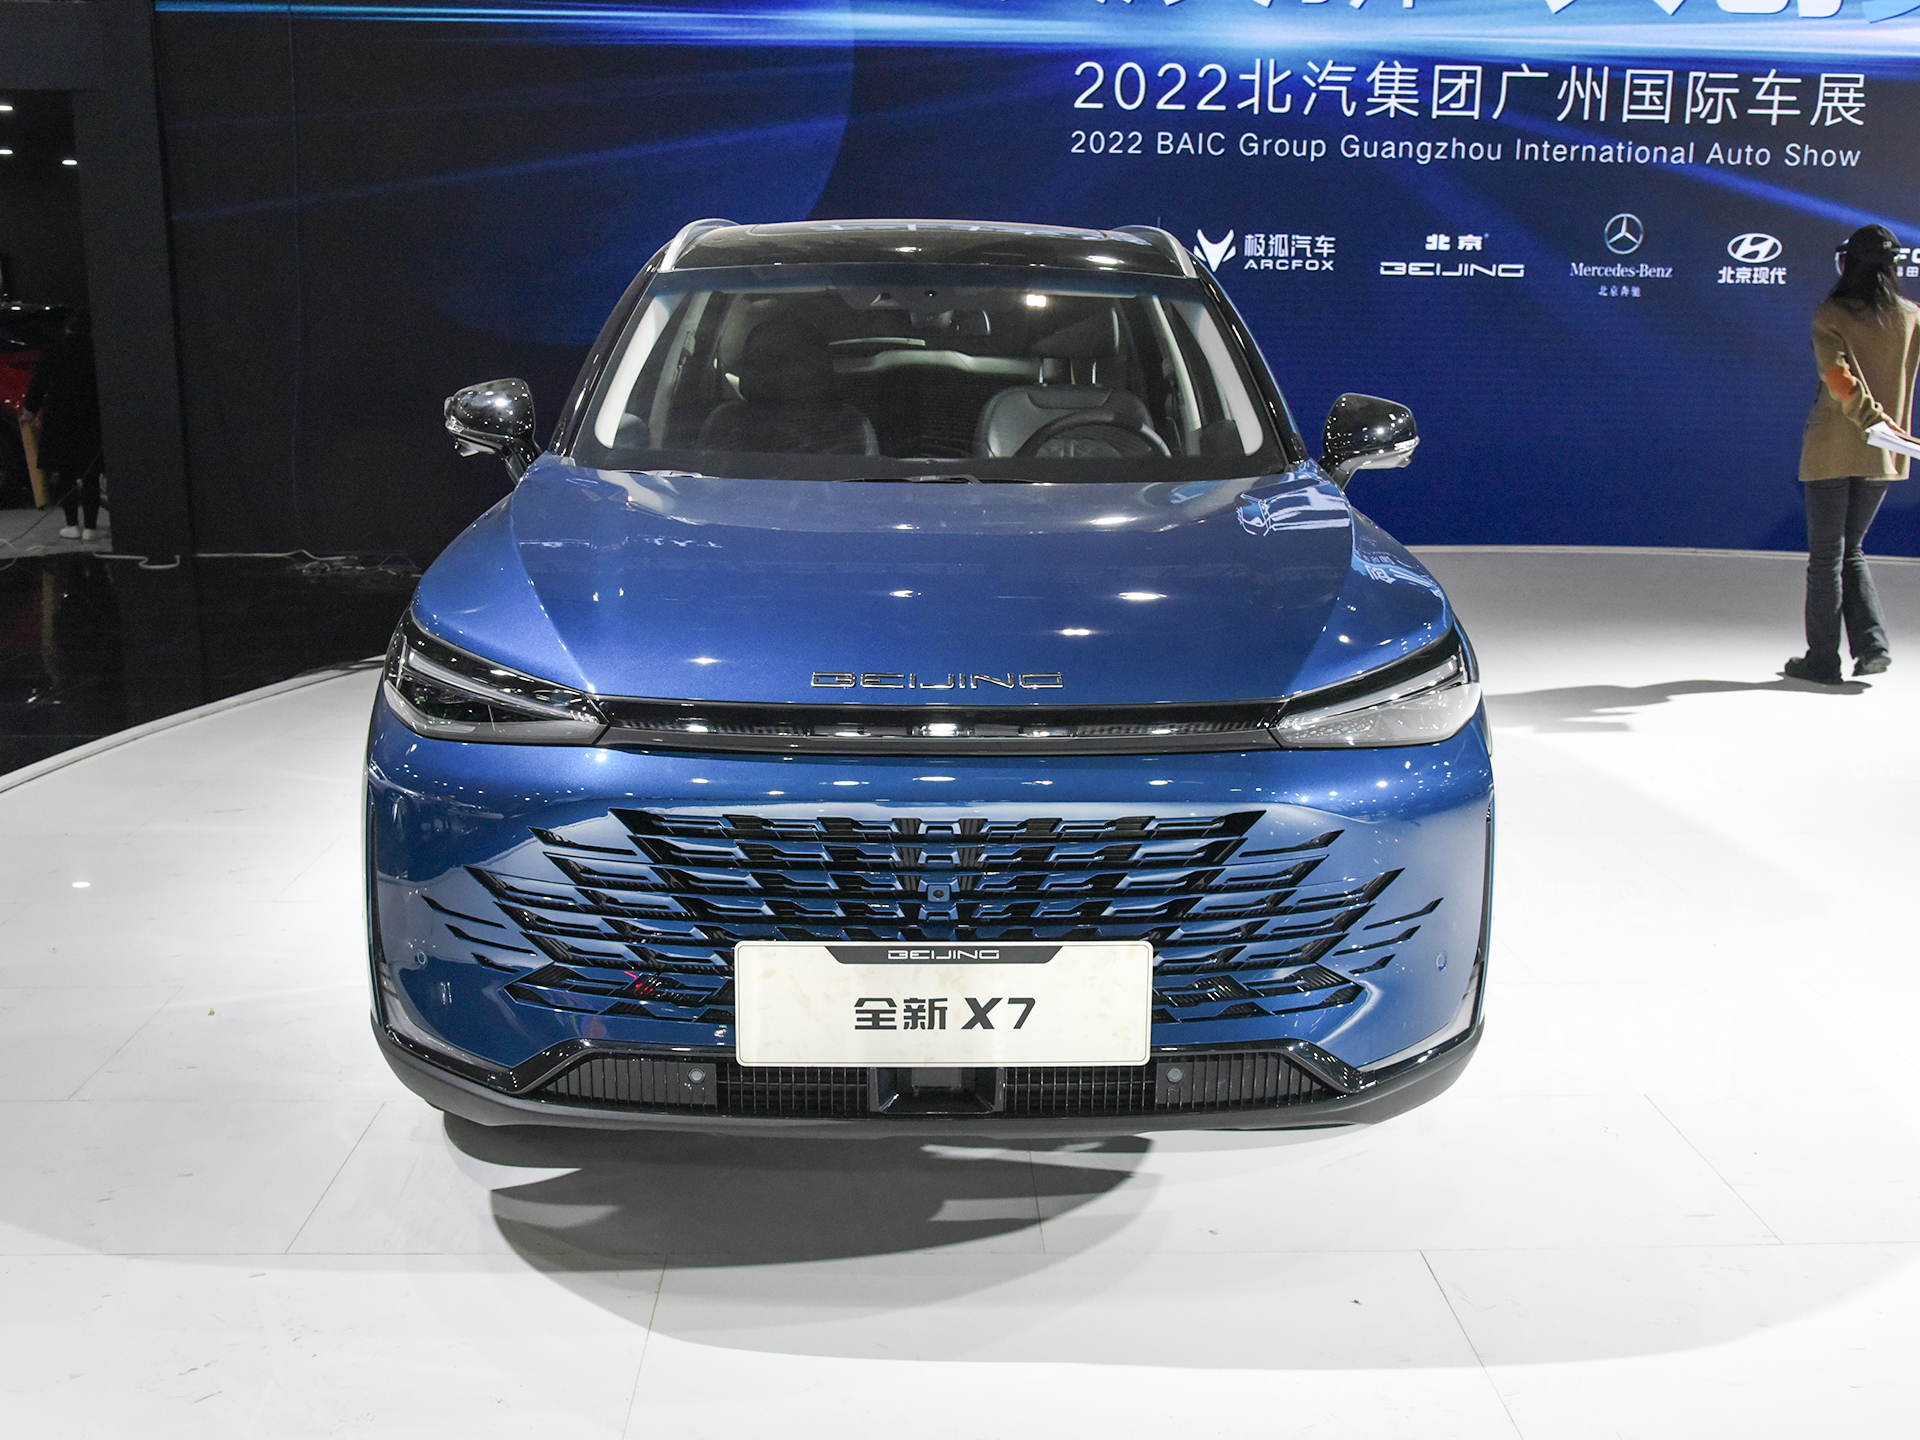 换装无边界格栅 新款北京x7亮相广州车展 运动感更强